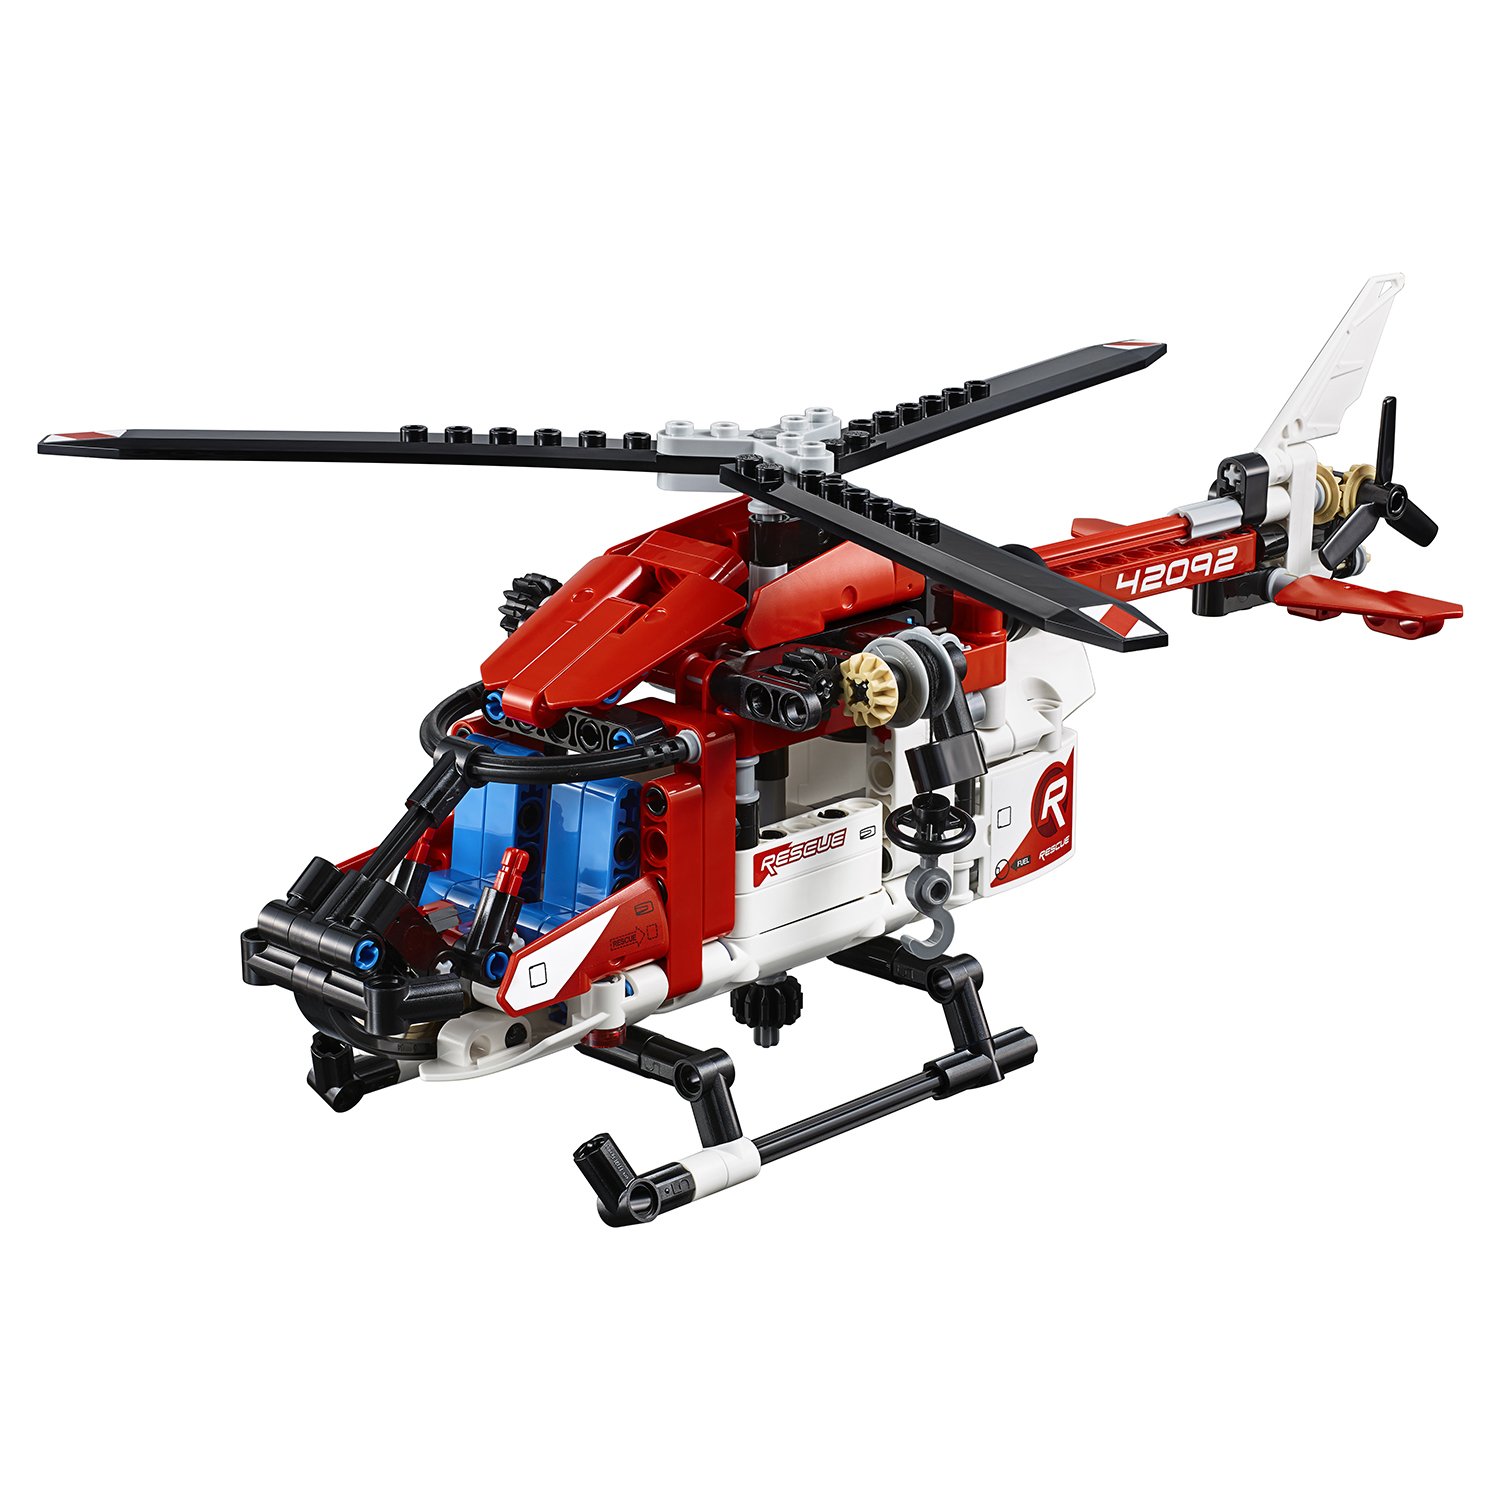 Конструктор JiSi «Спасательный вертолет» 13385 (42092) 344 детали